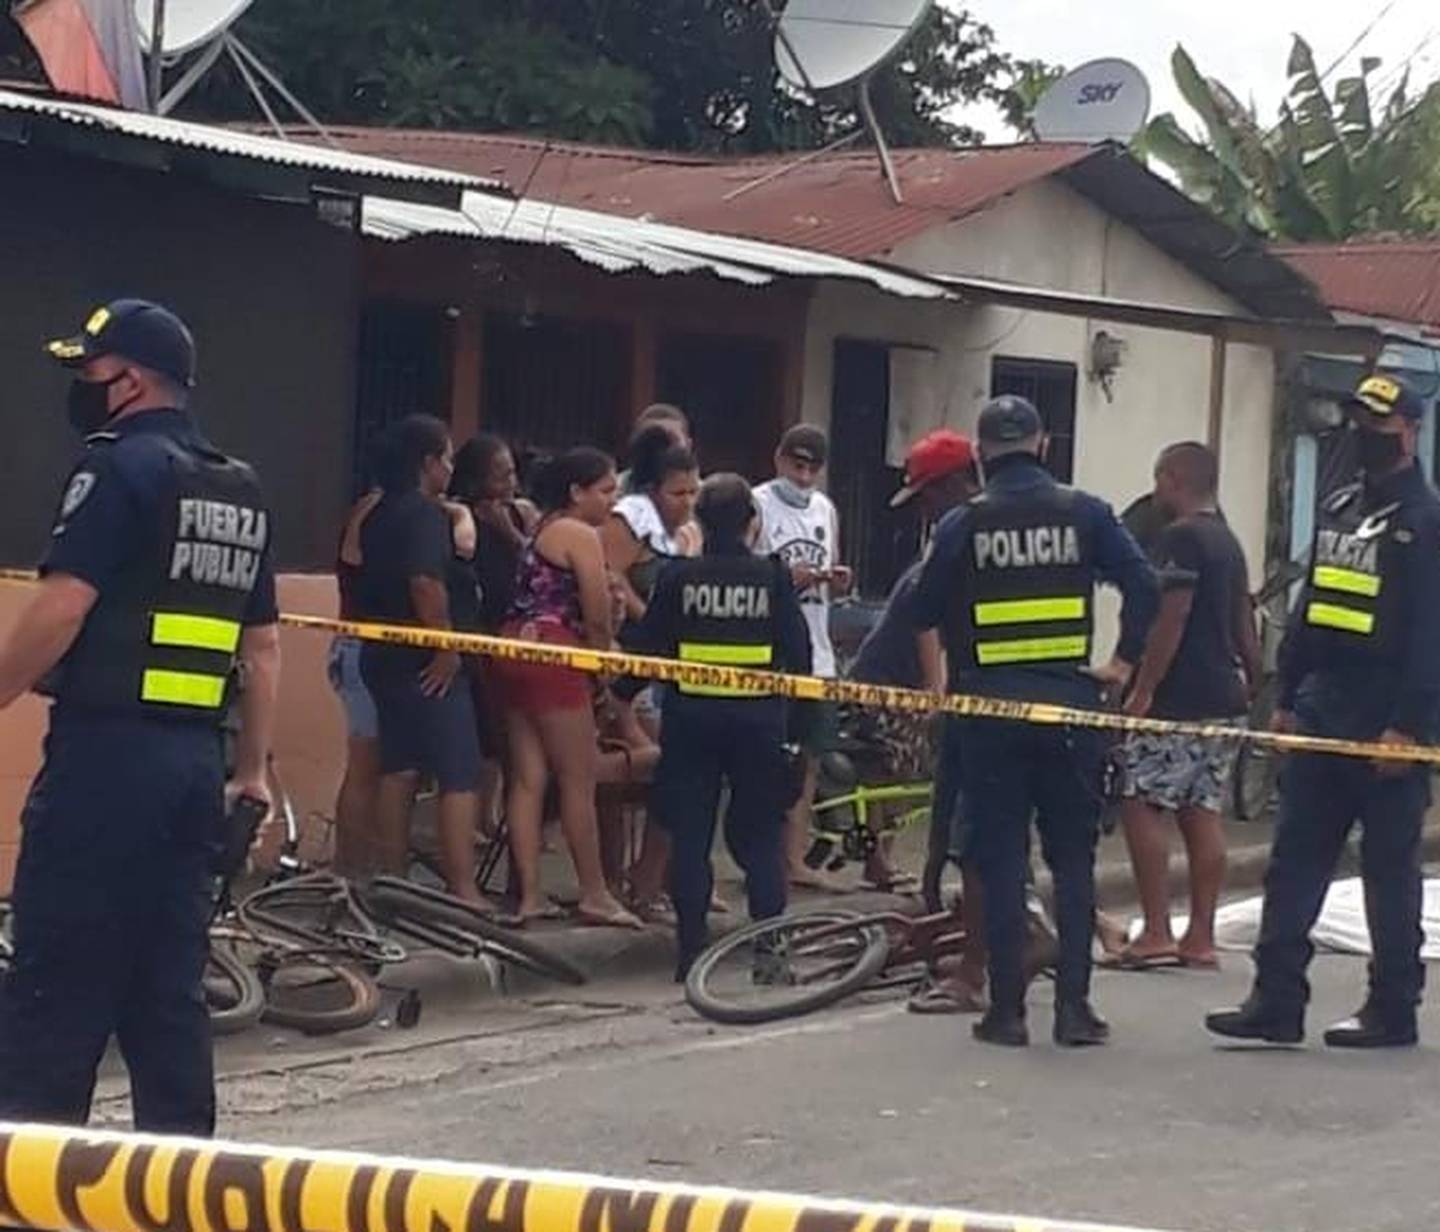 La Fuerza Pública tuvo que acordonar el sitio en la parada 3 de Fray Casiano e impedir que allegados del fallecido alteraran la escena. Foto: Andrés Garita.